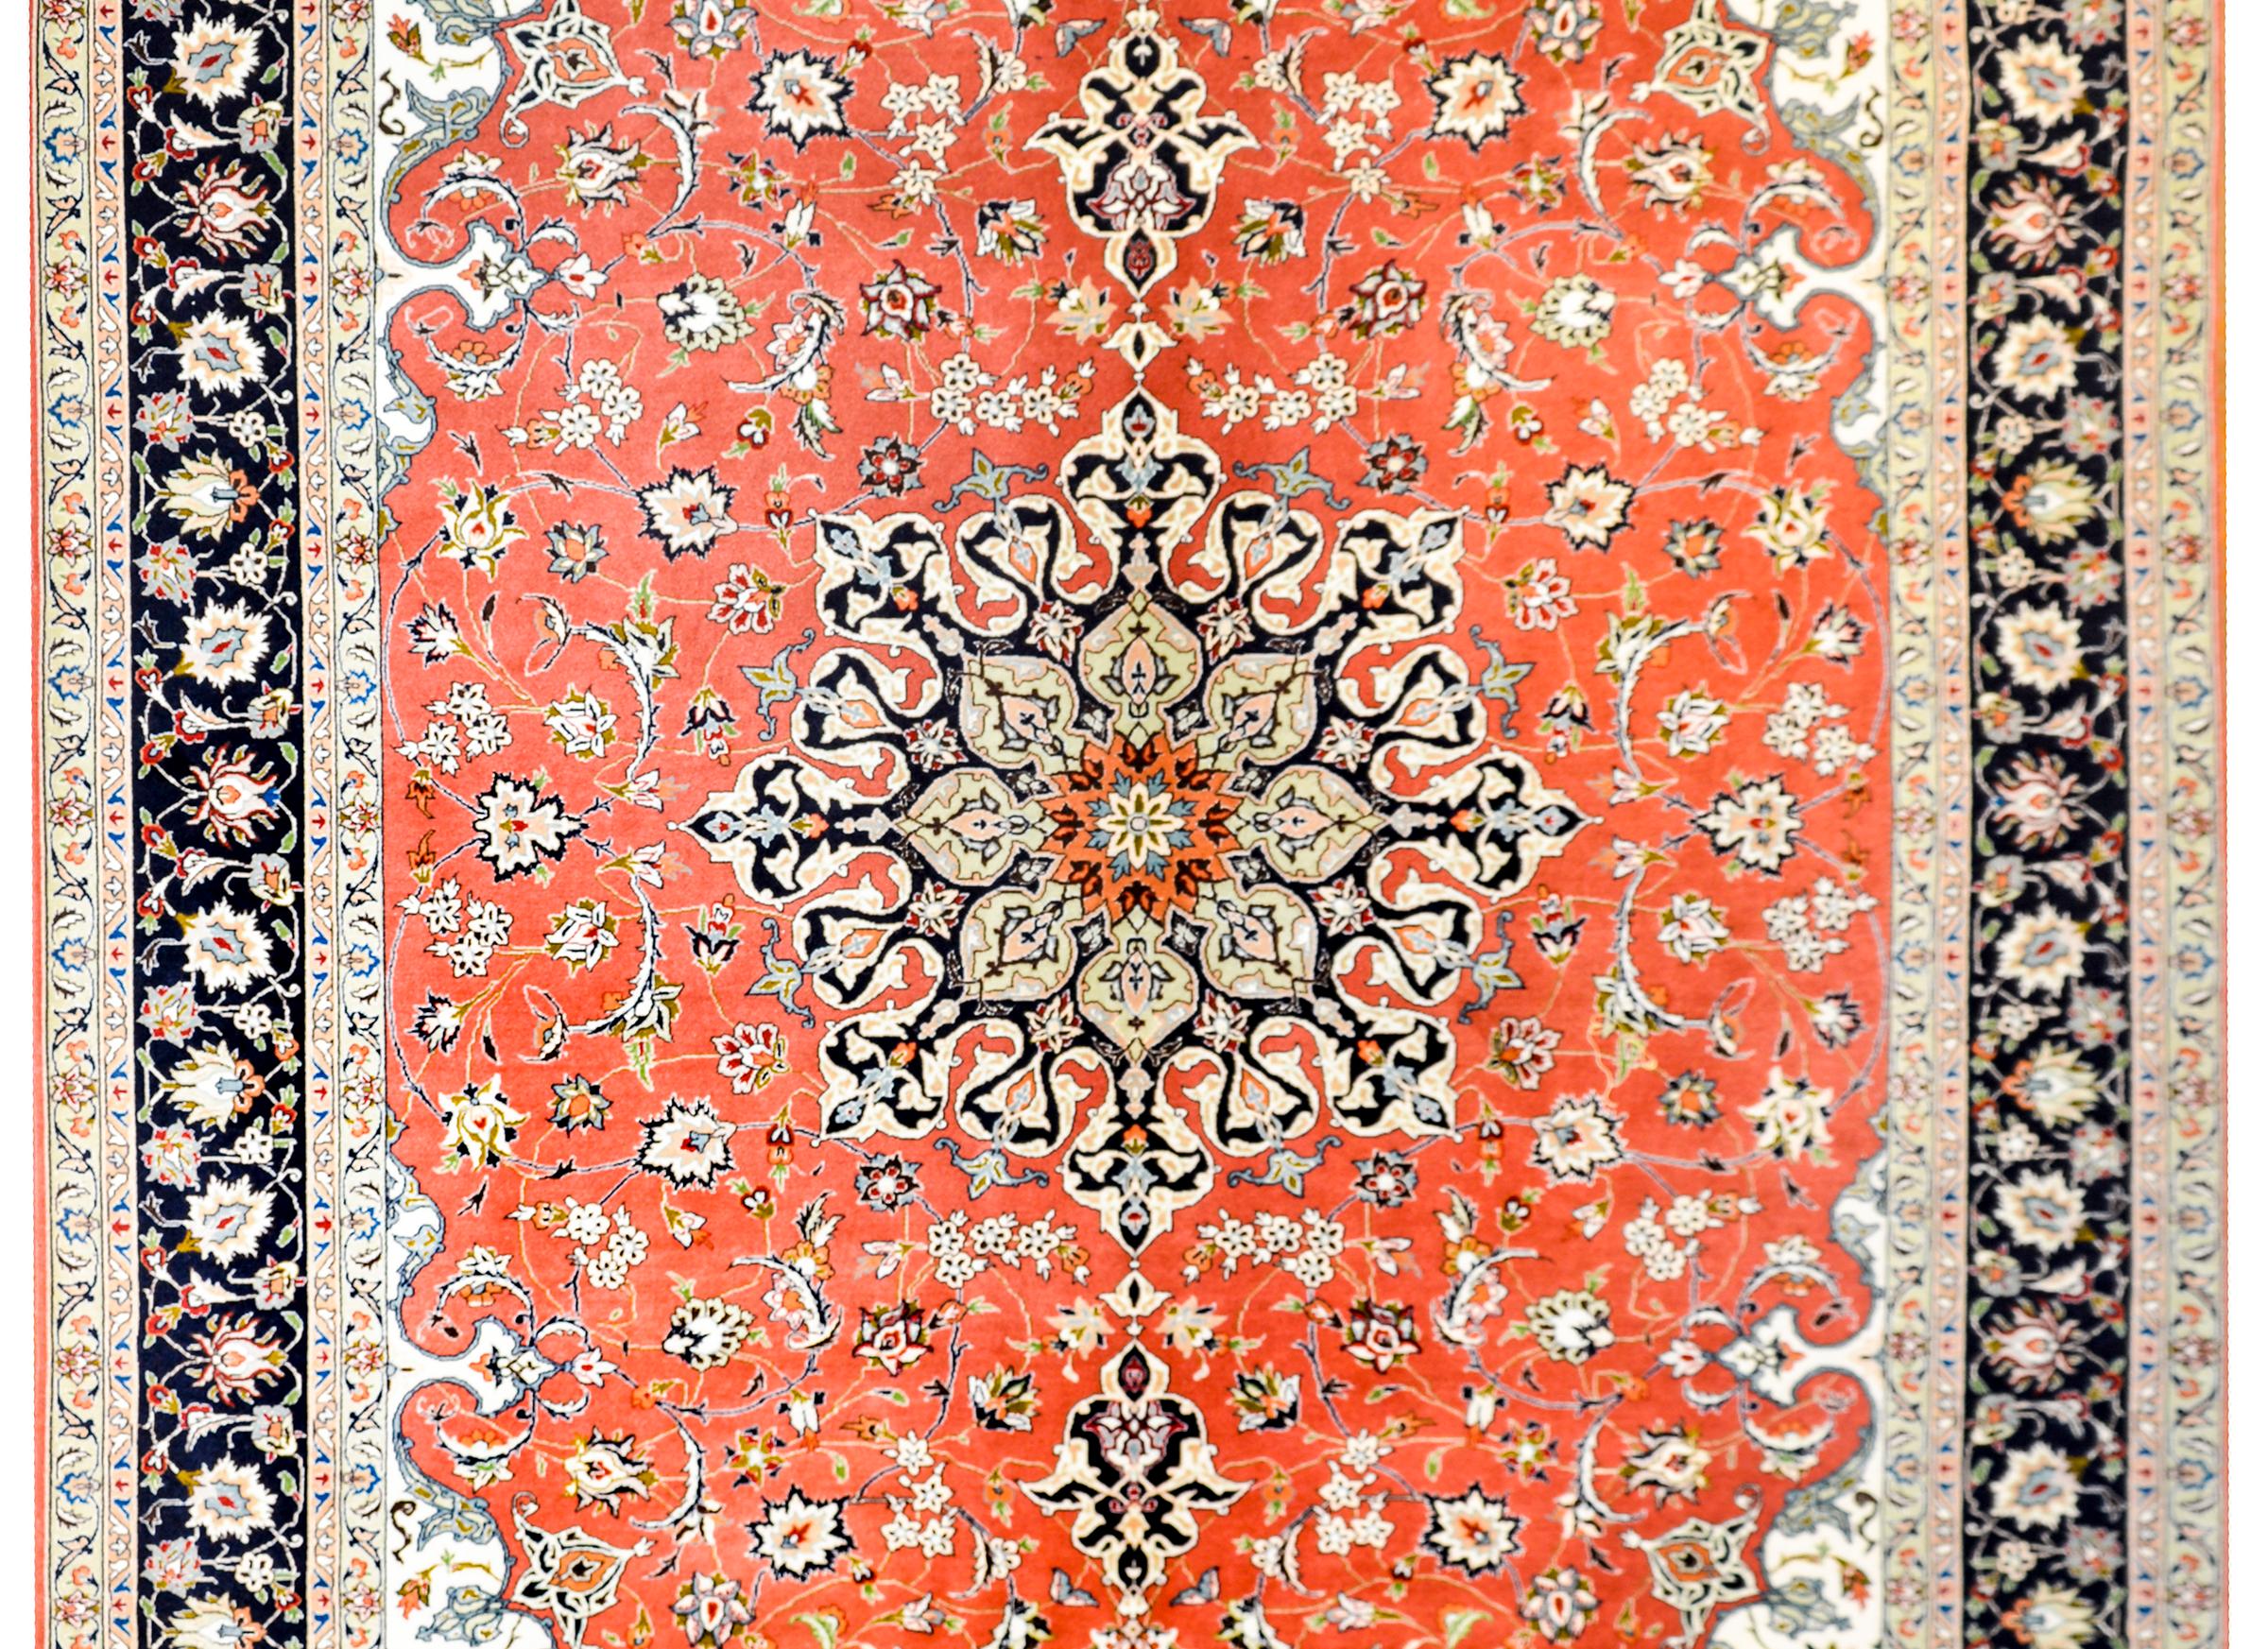 Ein persischer Täbriz-Teppich mit einem wunderschönen großen zentralen Blumenmedaillon inmitten eines Feldes von fein gewebten Ranken auf orangefarbenem Hintergrund, um 1980er Jahre. Die Bordüre ist komplex mit mehreren kleinen und großen floralen